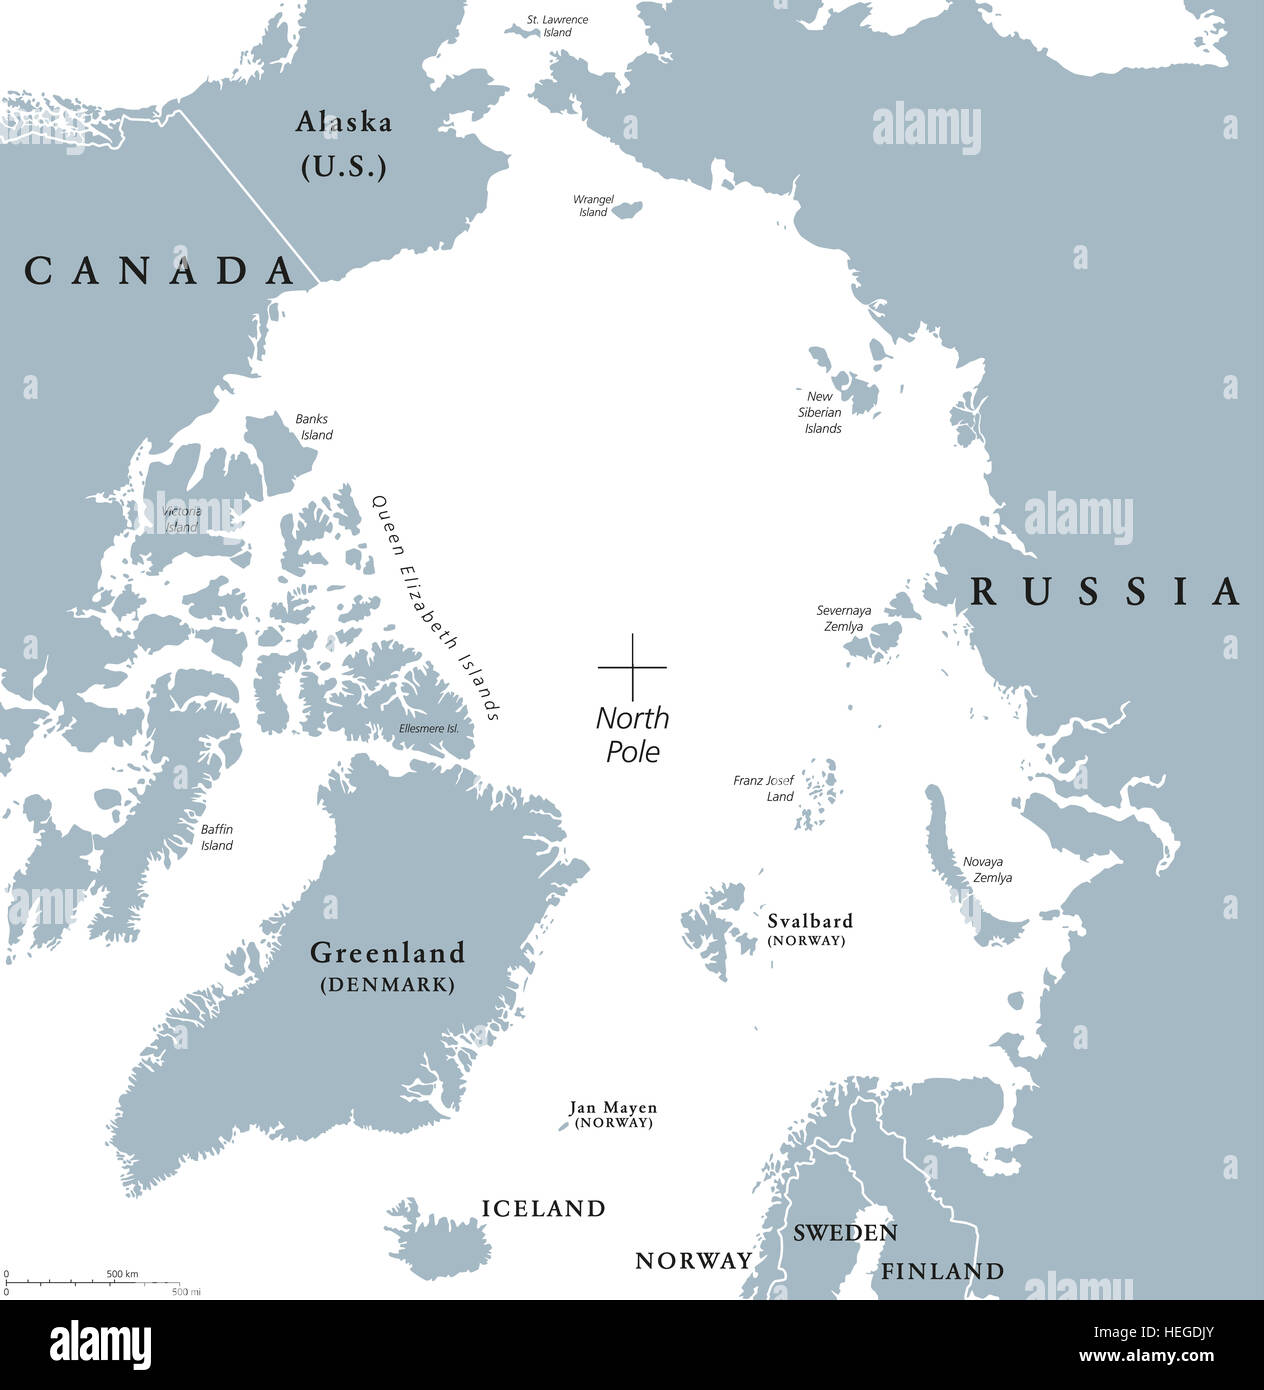 Politische Karte der arktischen Region. Polarregion rund um den Nordpol am nördlichsten Teil der Erde. Das Nordpolarmeer ohne Eis. Stockfoto